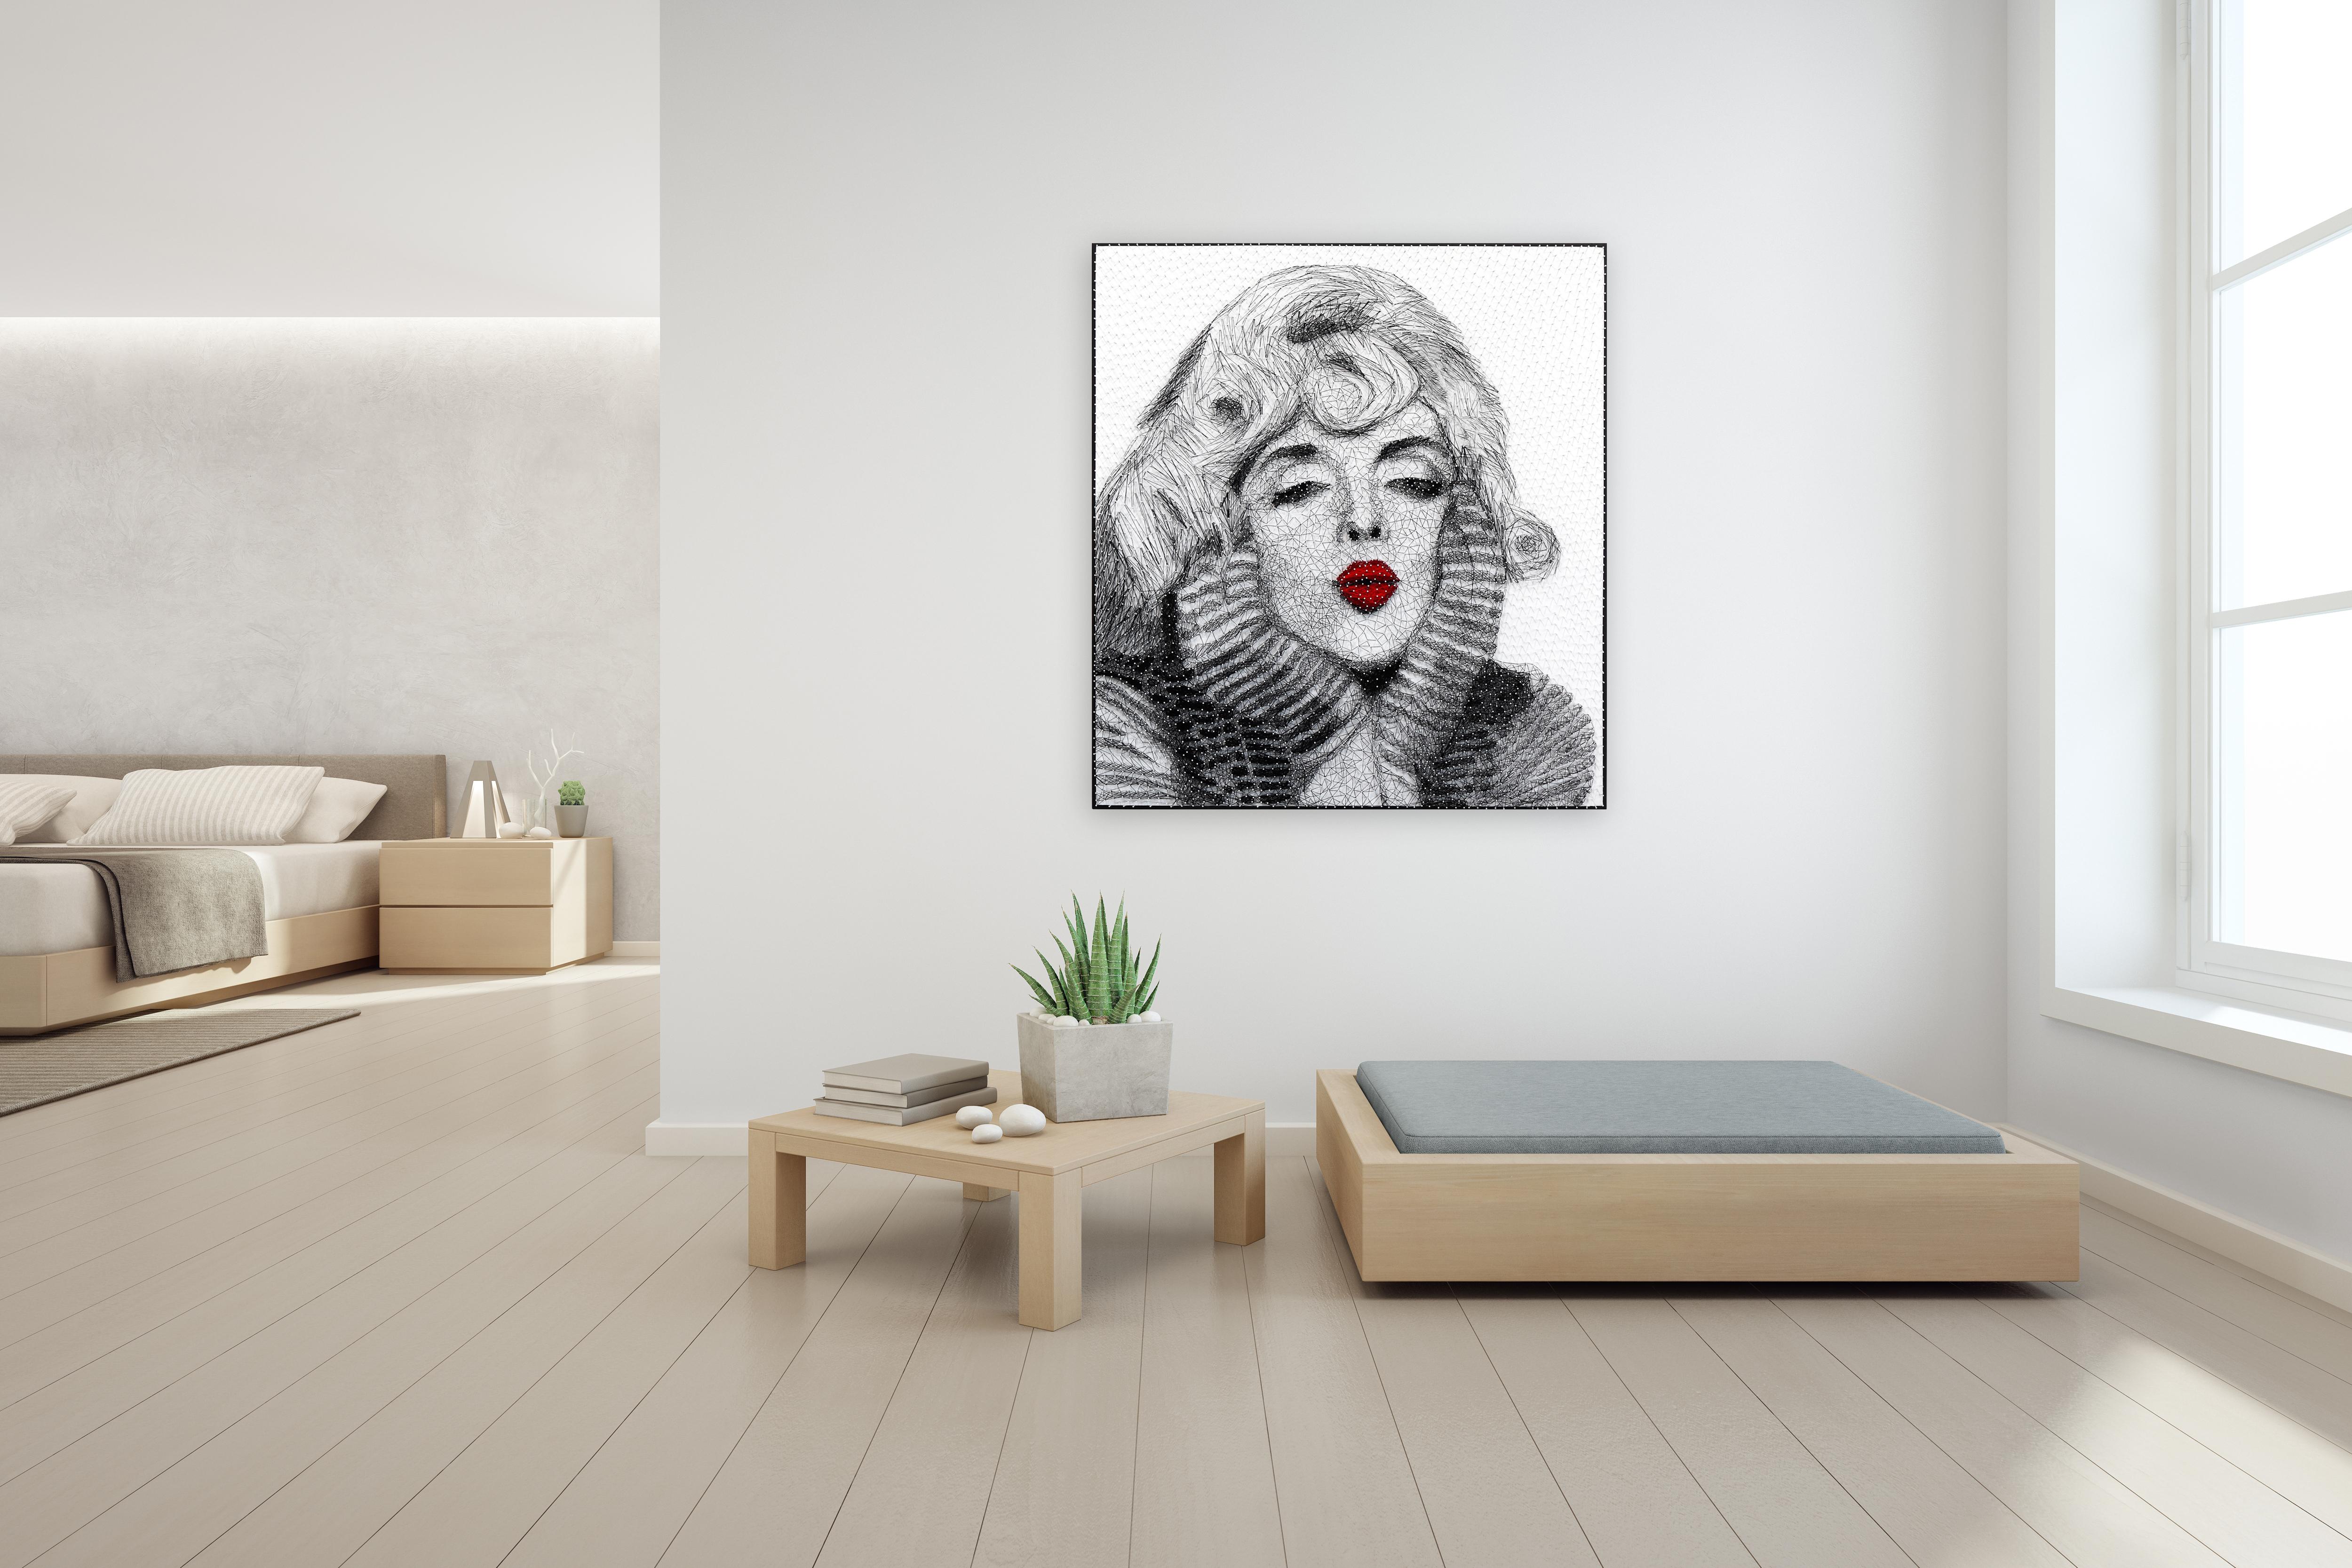 Marilyn 2  -  Original Monroe Mixed Media String Artwork - Pop Art Painting by Ricky Hunt